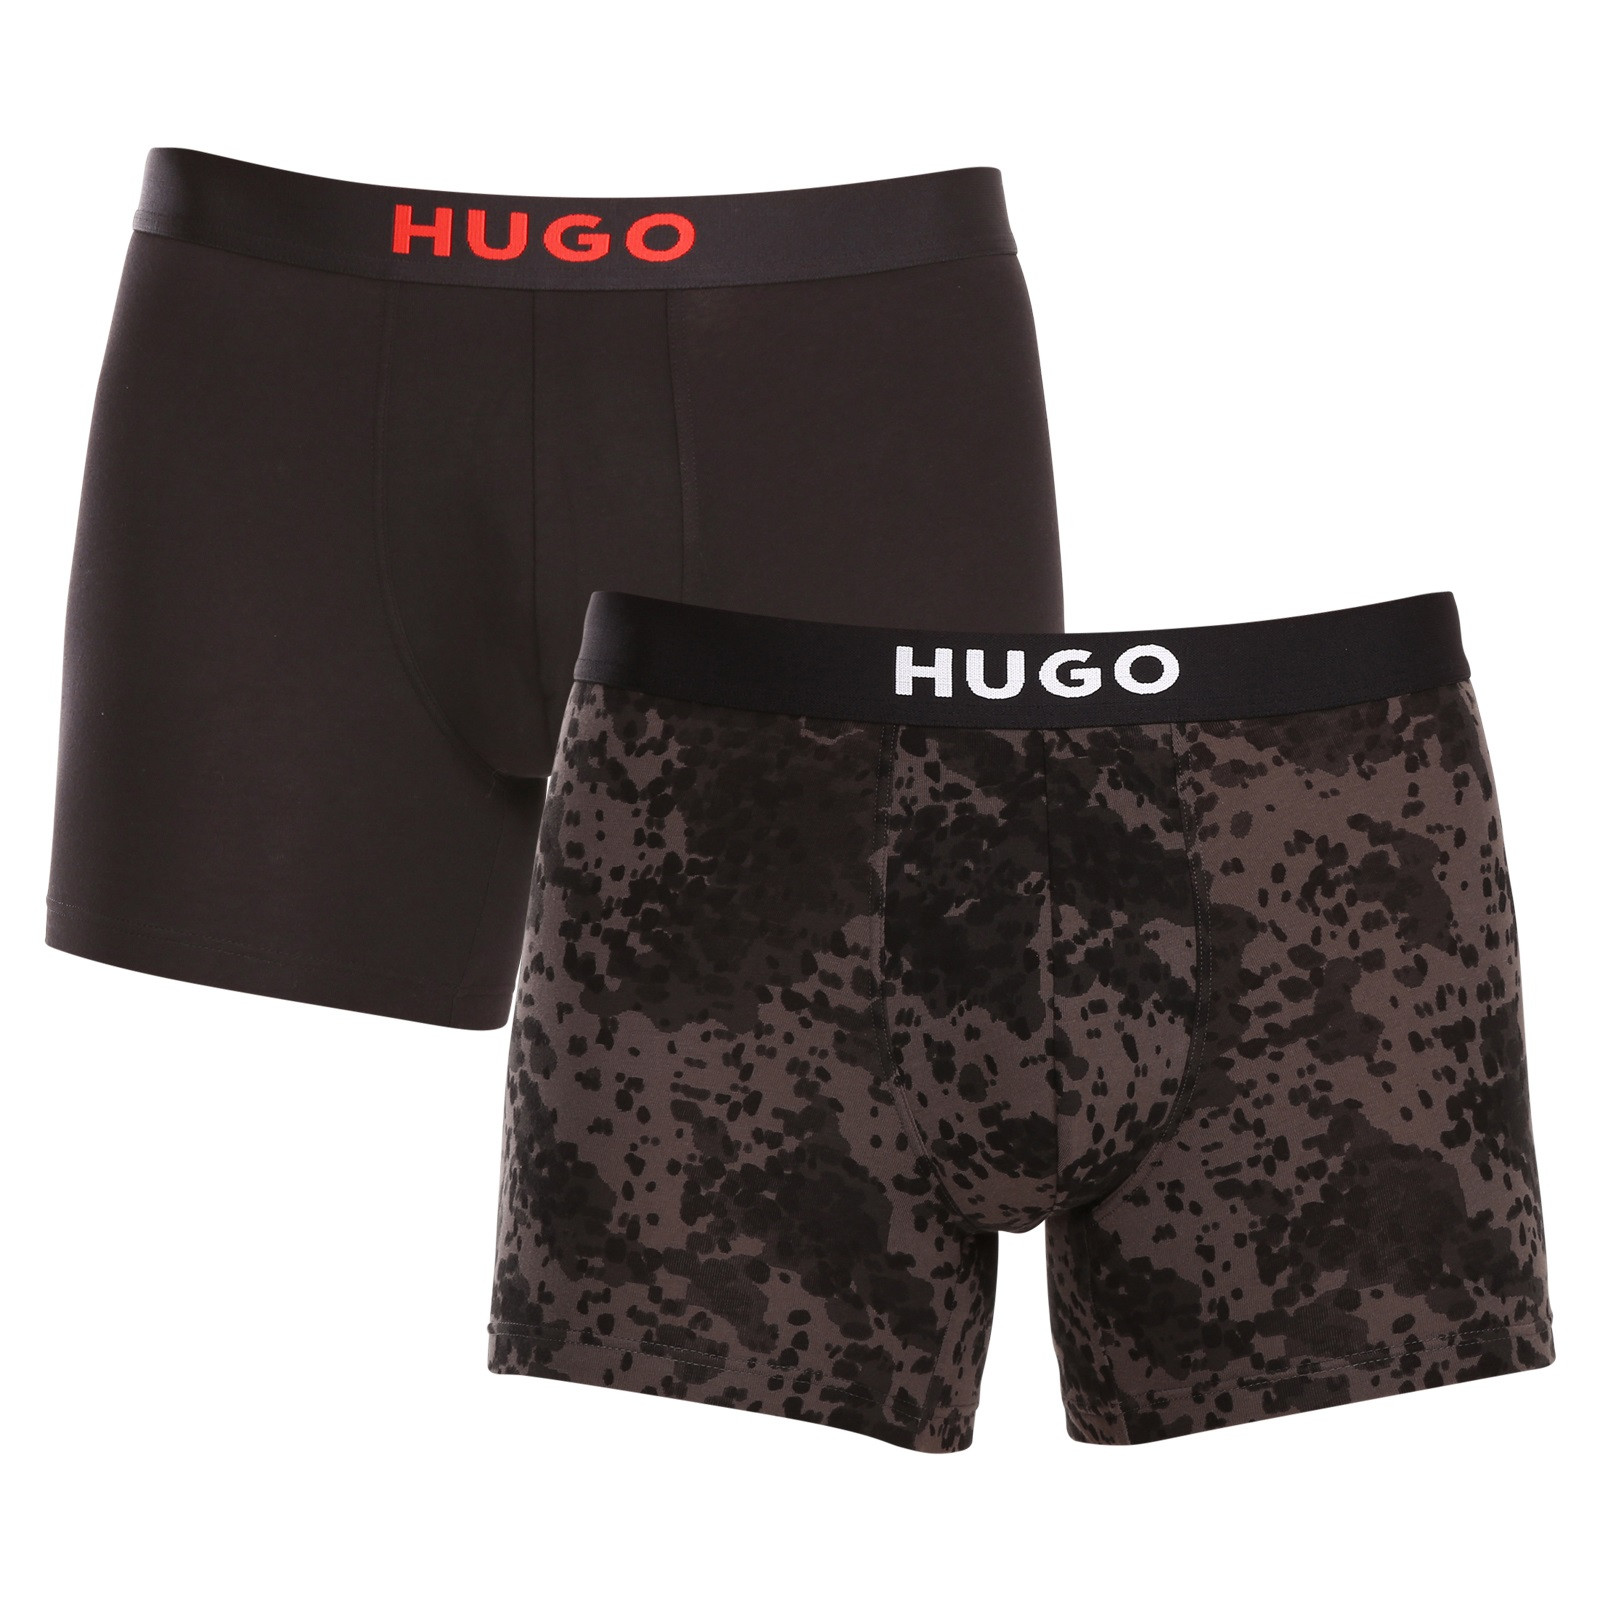 2PACK Men's Boxer Shorts Hugo Boss multicolored